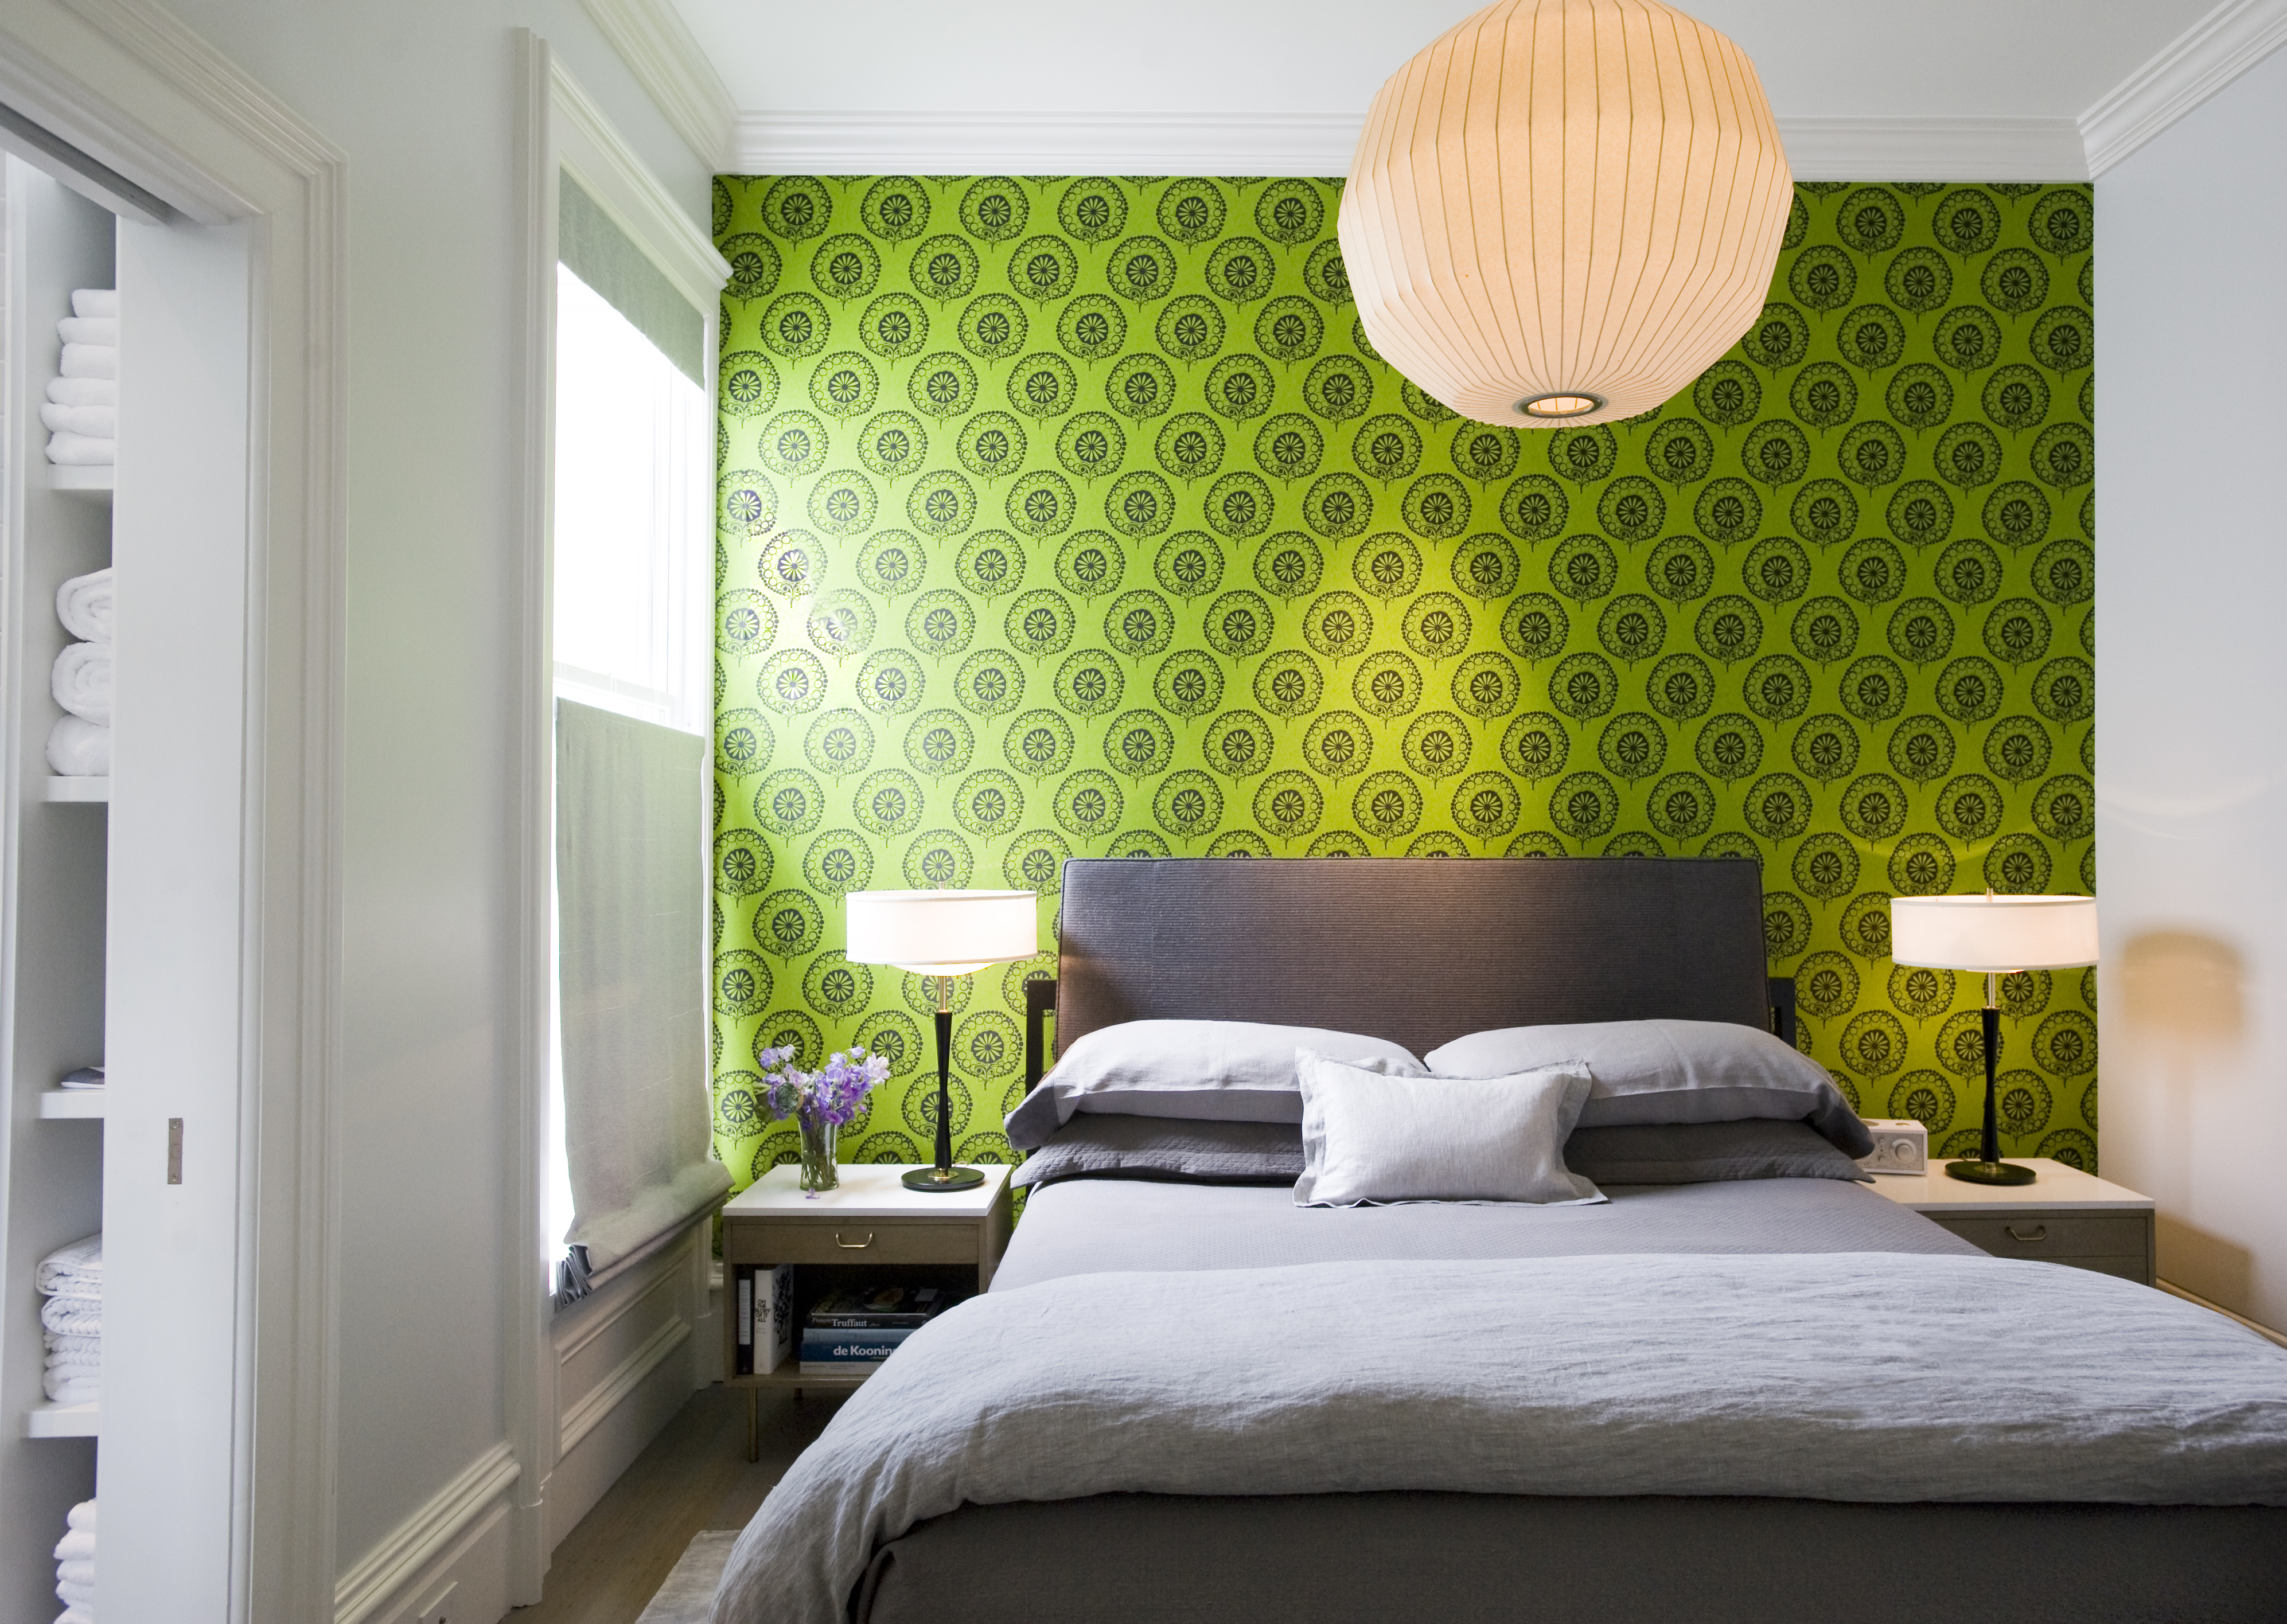 Обои в зеленых тонах. Спальня в зеленых тонах. Яркая спальня в современном стиле. Зеленый интерьер спальни. Салатовые стены.